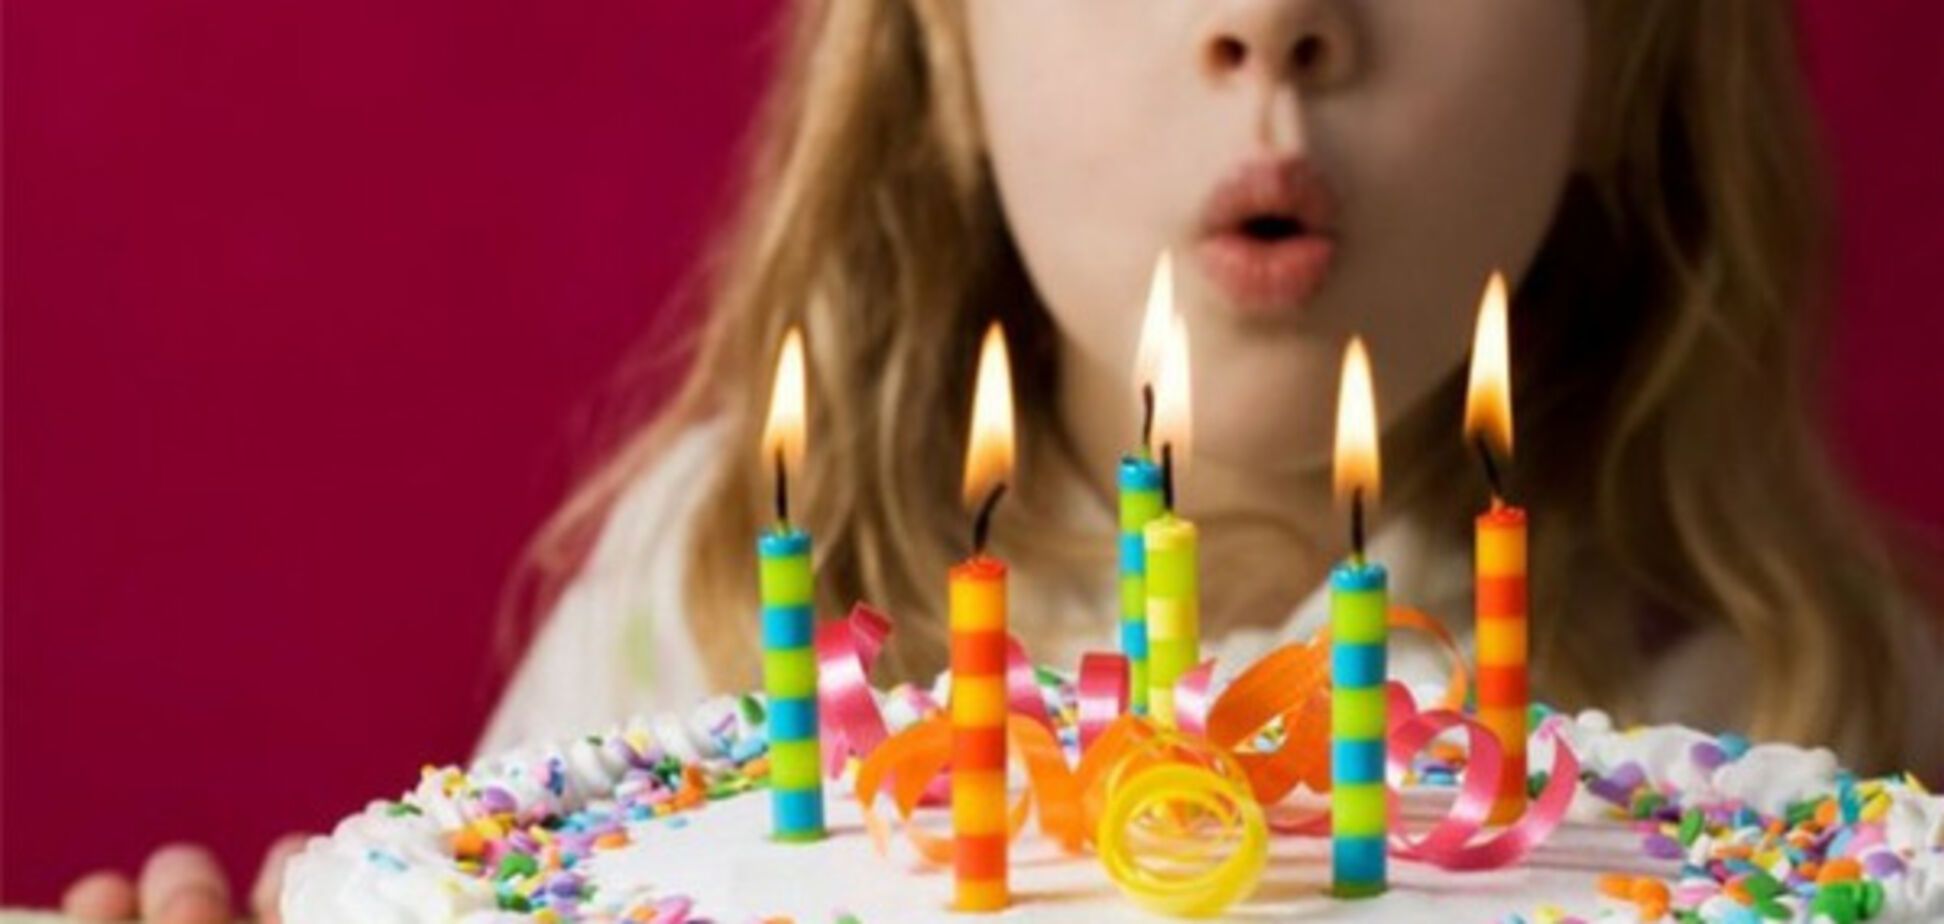 Грязная правда о свечах на торте: популярный ритуал оставляет опасные бактерии 